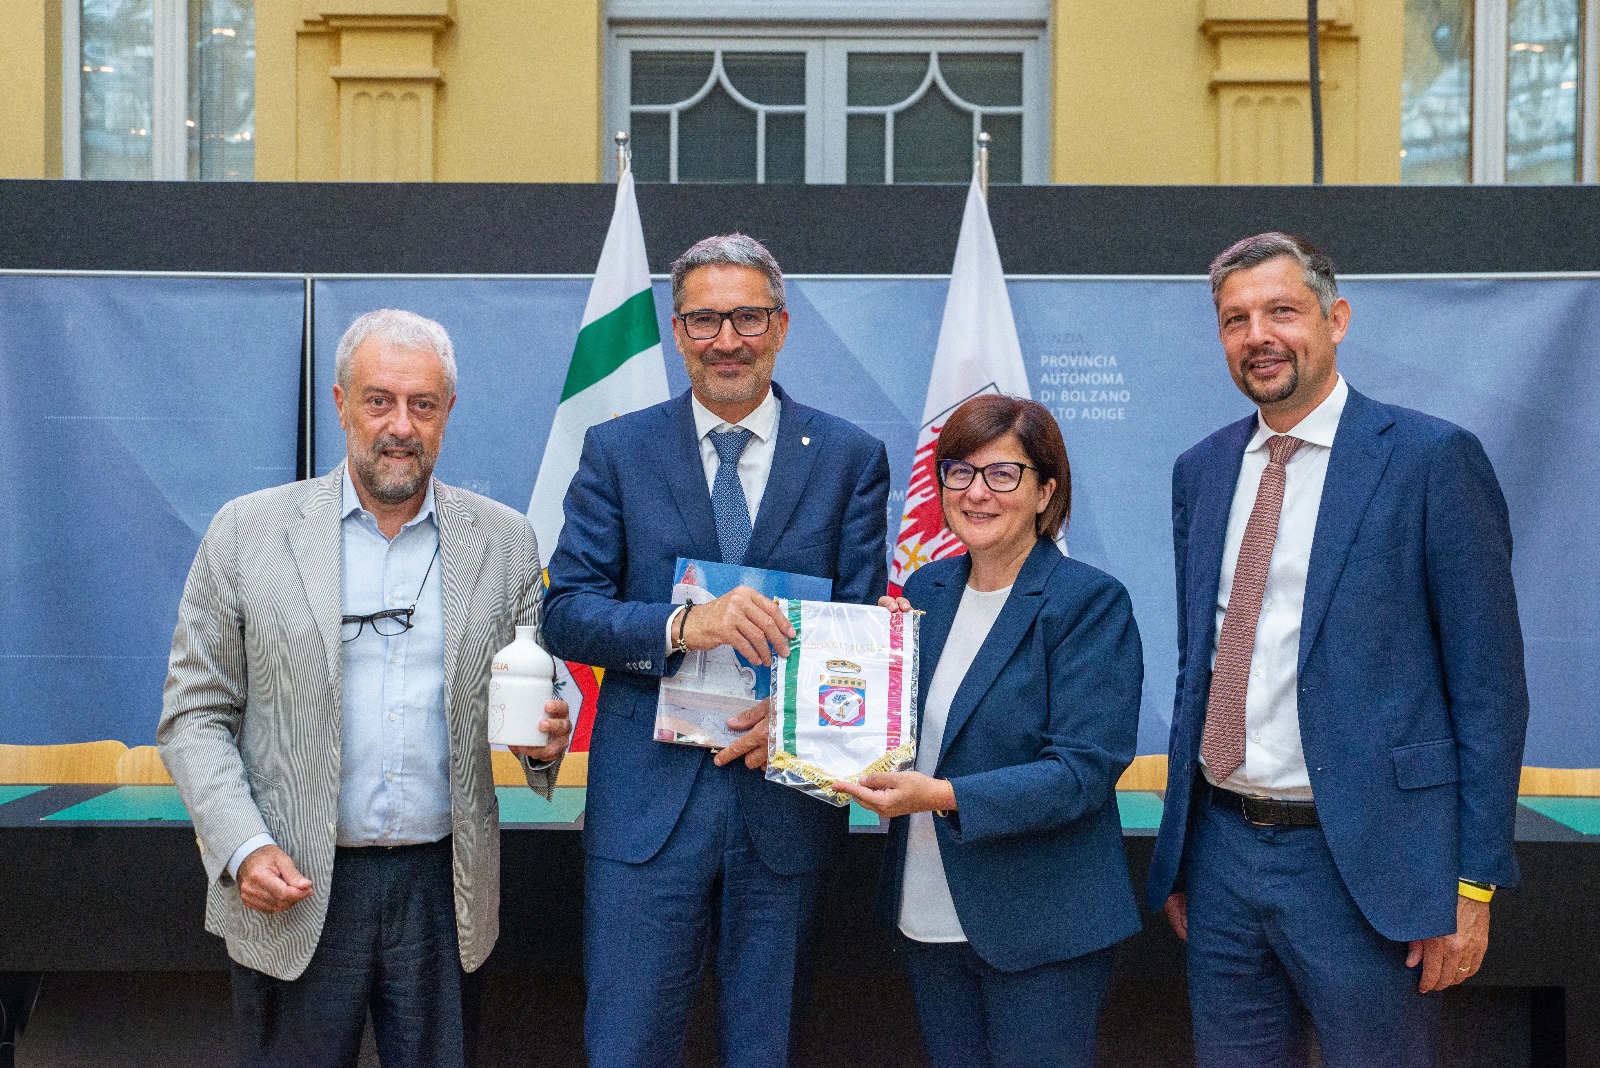 Galleria Puglia e Alto Adige firmano un accordo per la promozione dell’uso dell’idrogeno nel settore trasporti e della transizione ecologica - Diapositiva 6 di 9